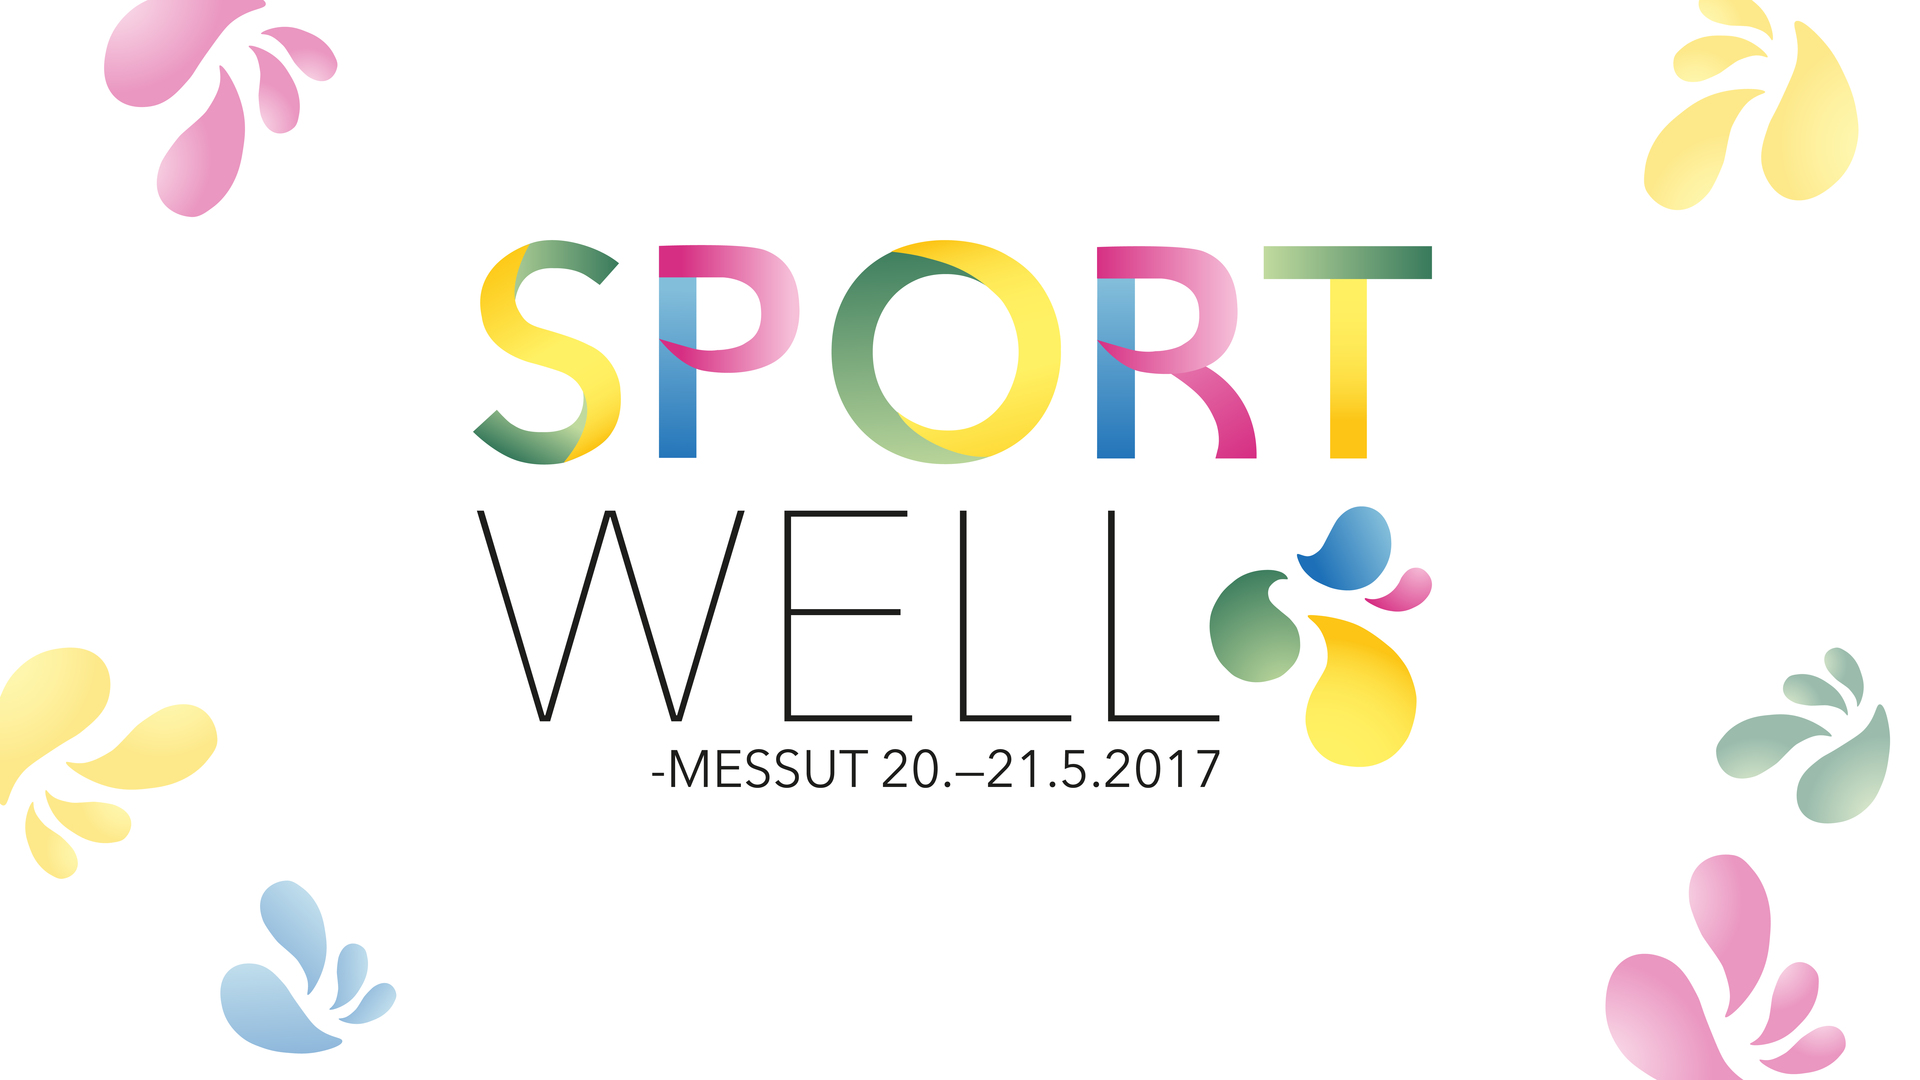 SportWell -messujen valmistelut käynnistyneet - graafinen ilme suunniteltu ja Fb-sivut avattu